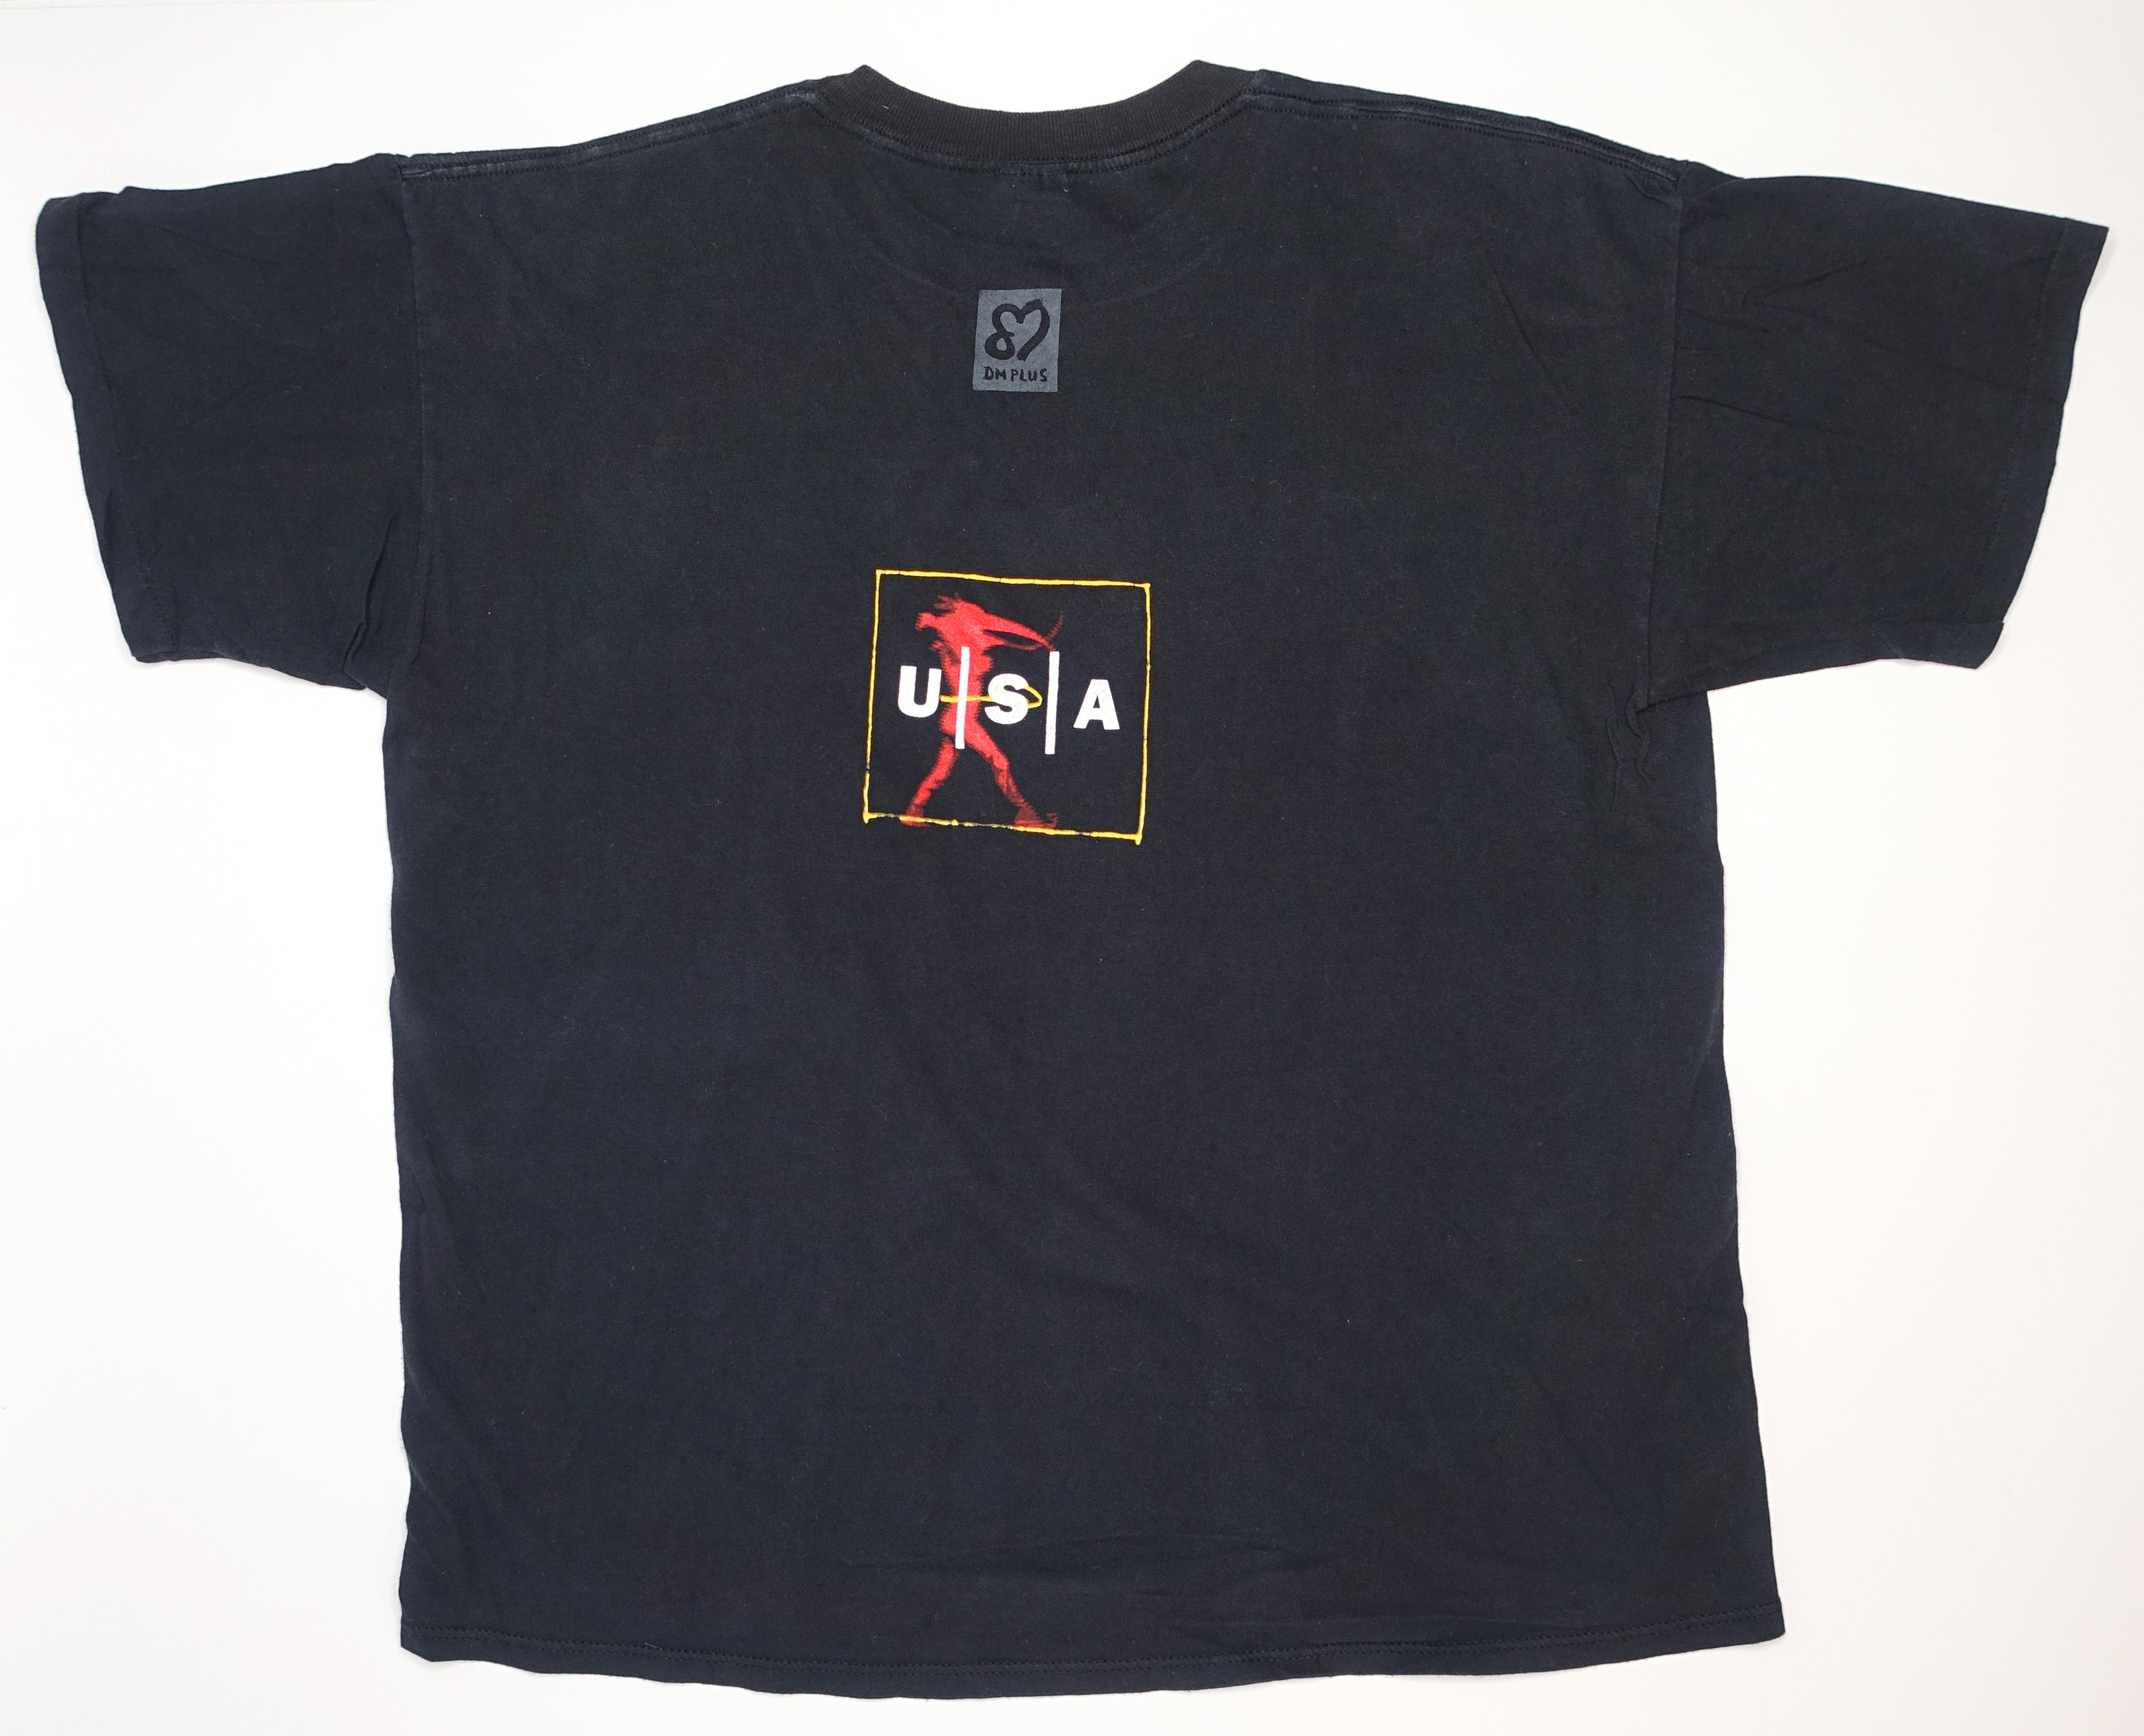 Depeche Mode – Walking In My Shoes 1994 USA Tour Shirt Size XL